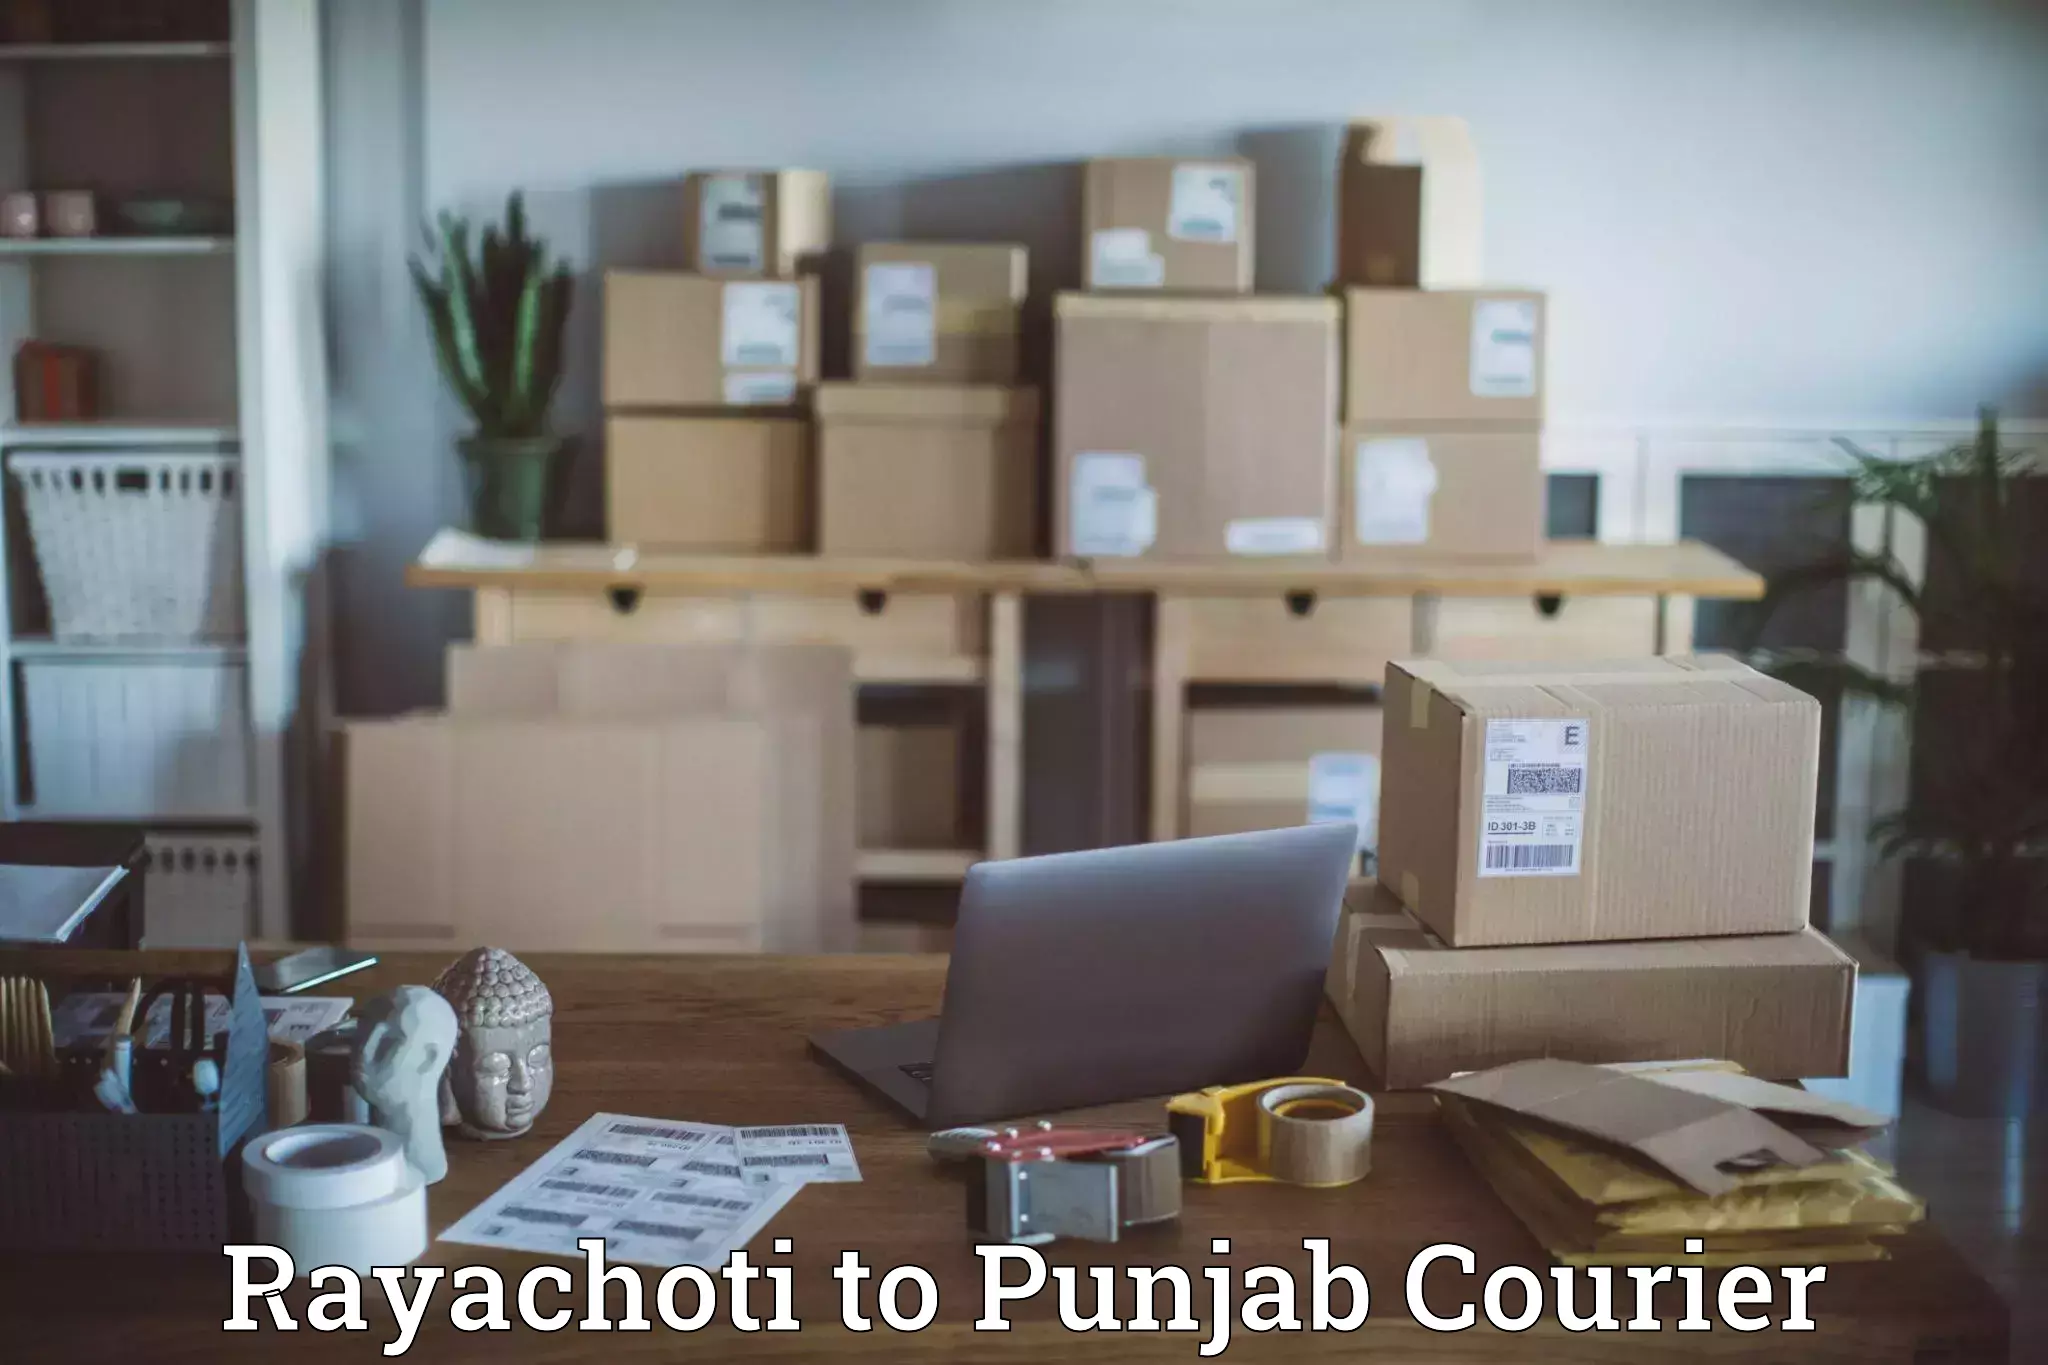 Next day courier Rayachoti to Punjab